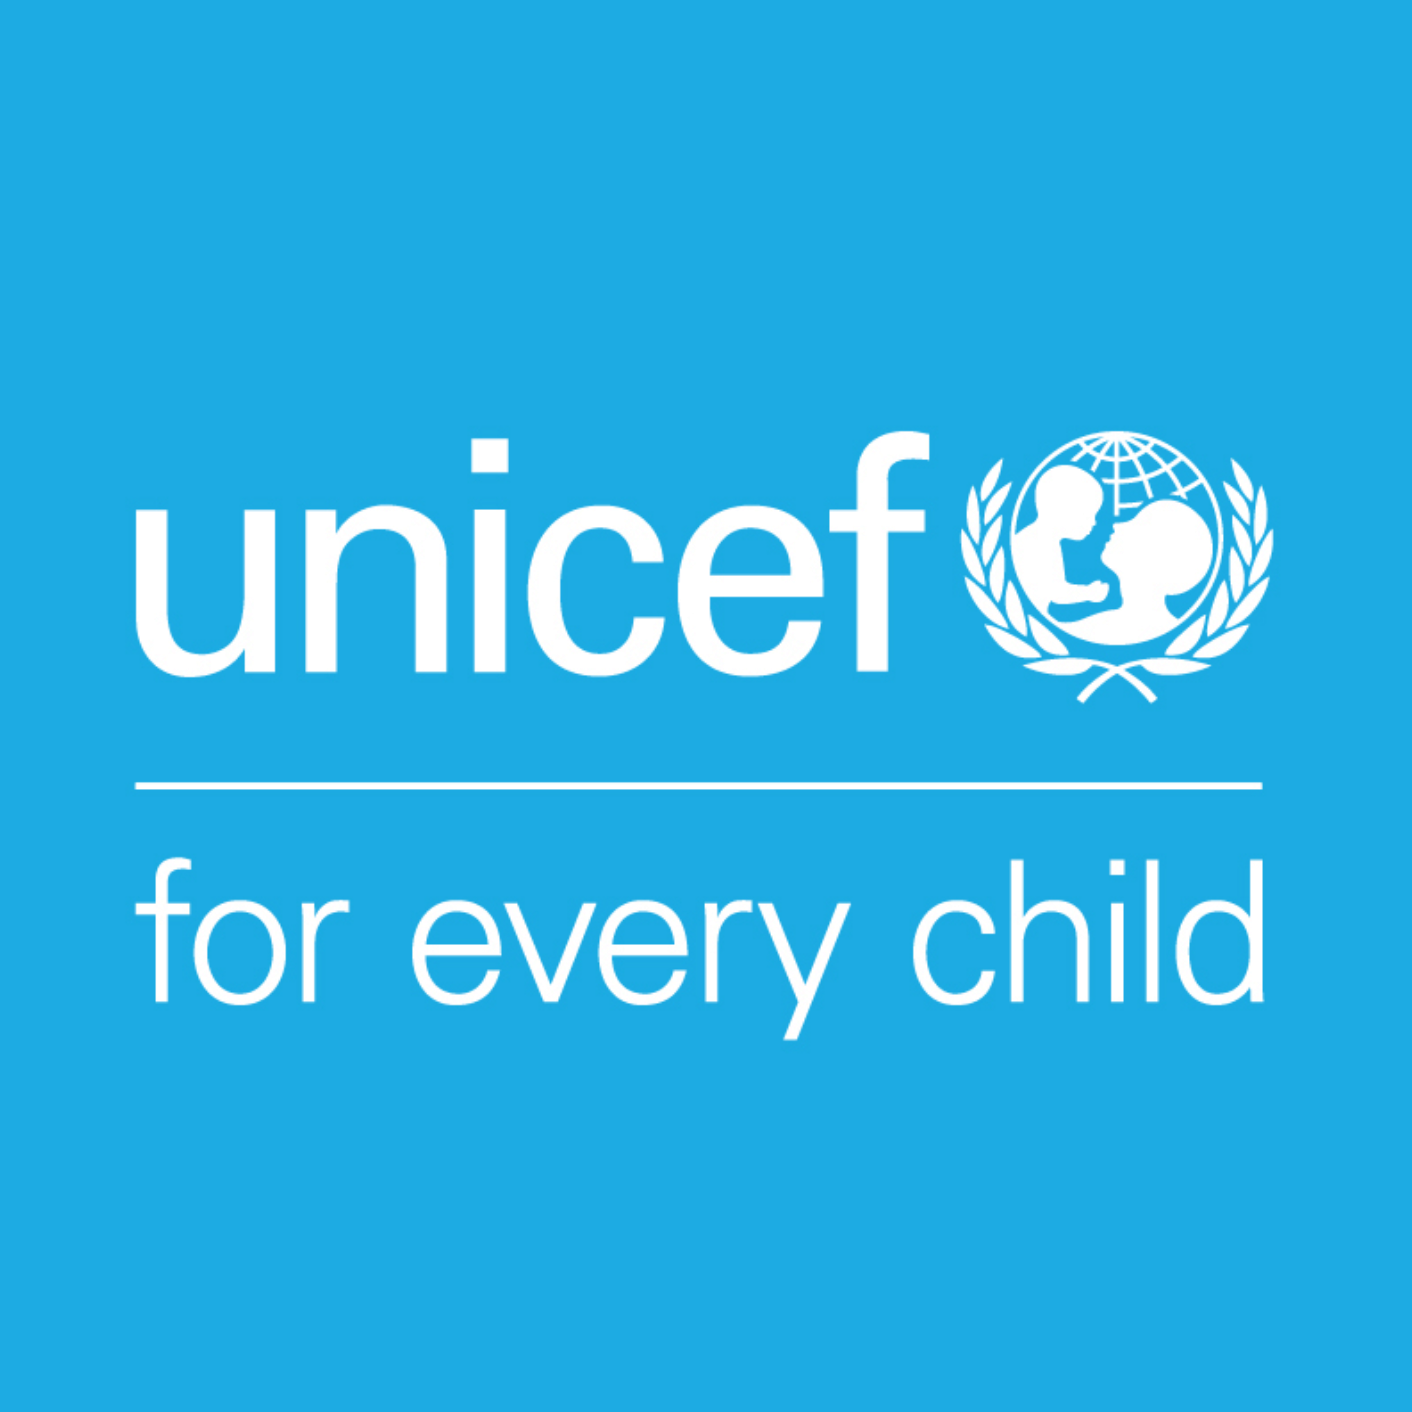 ახალგაზრდული პოლიტიკისა და სამოქმედო გეგმის შემუშავების პროგრამა  (UNICEF)